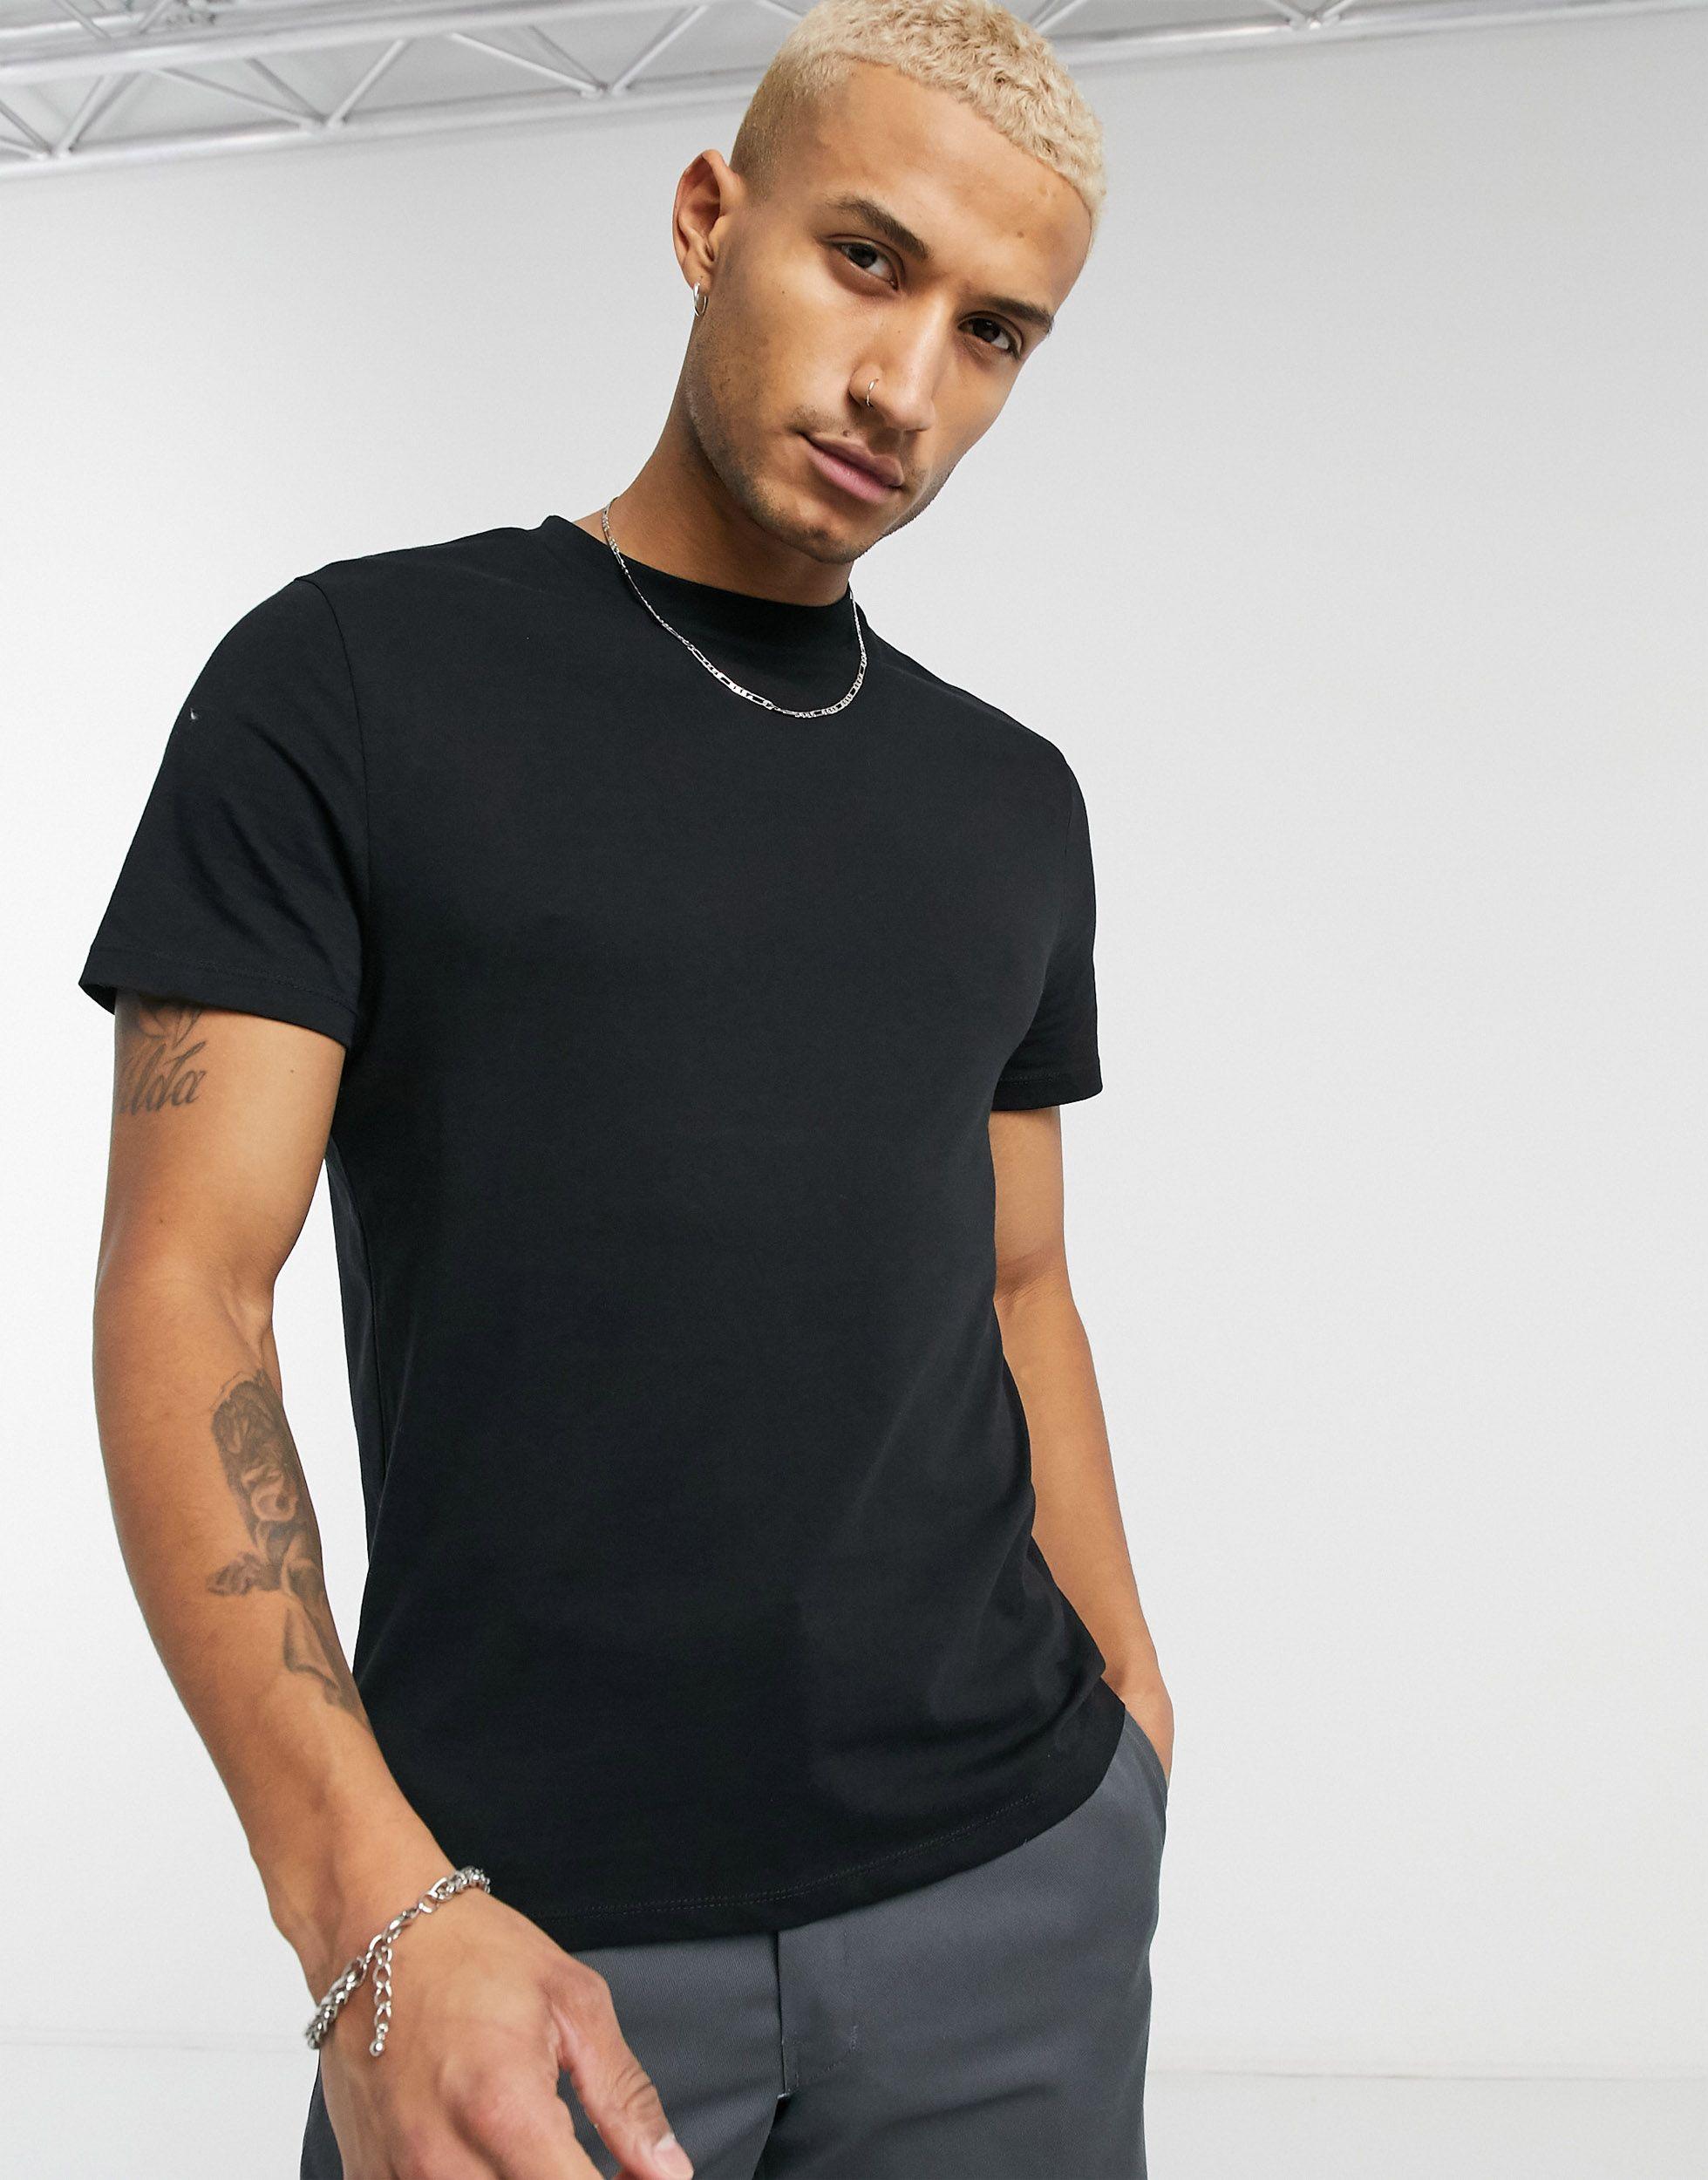 ASOS T-shirt in Black for Men - Lyst